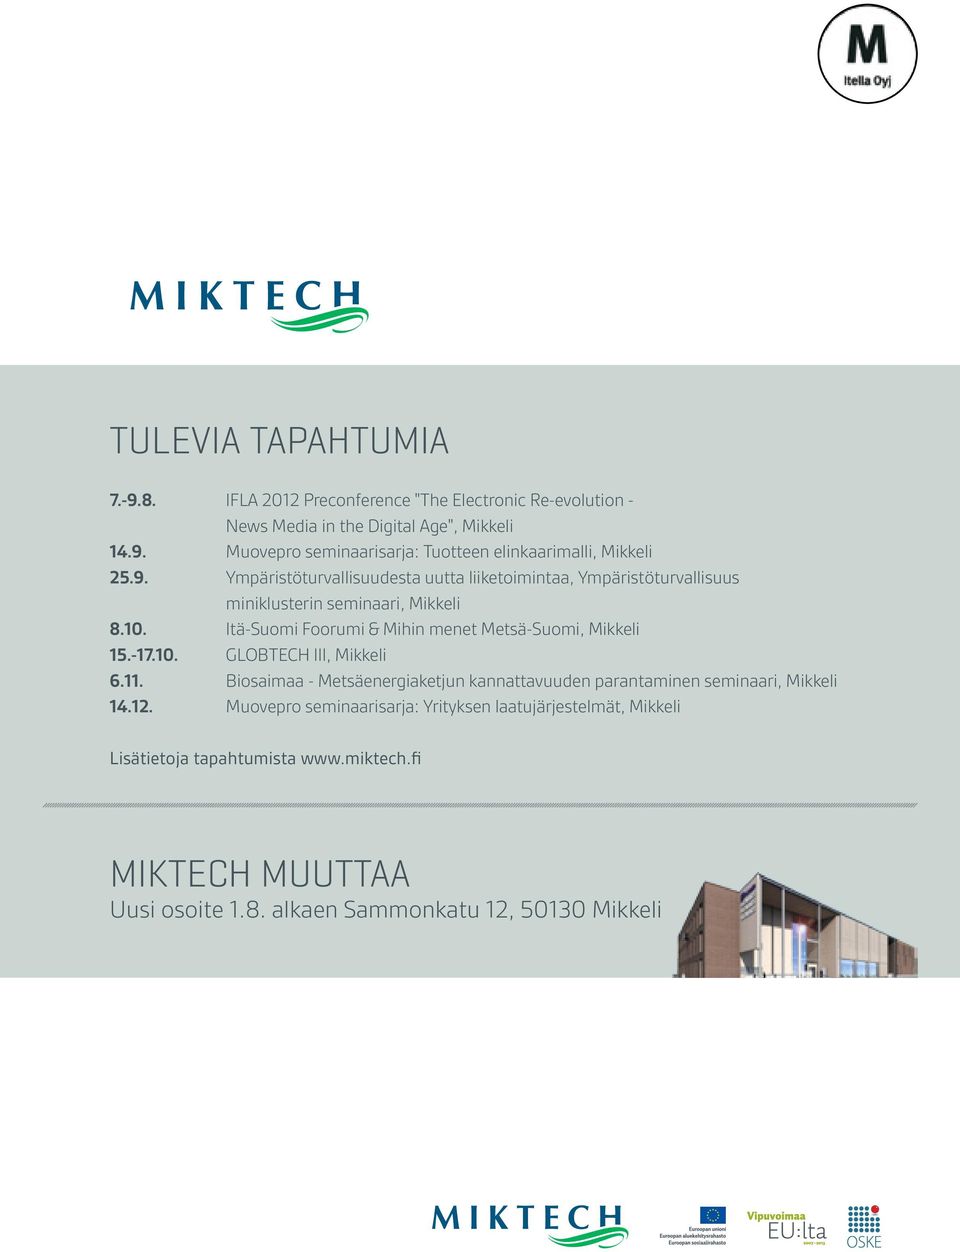 Itä-Suomi Foorumi & Mihin menet Metsä-Suomi, Mikkeli 15.-17.10. GLOBTECH III, Mikkeli 6.11.